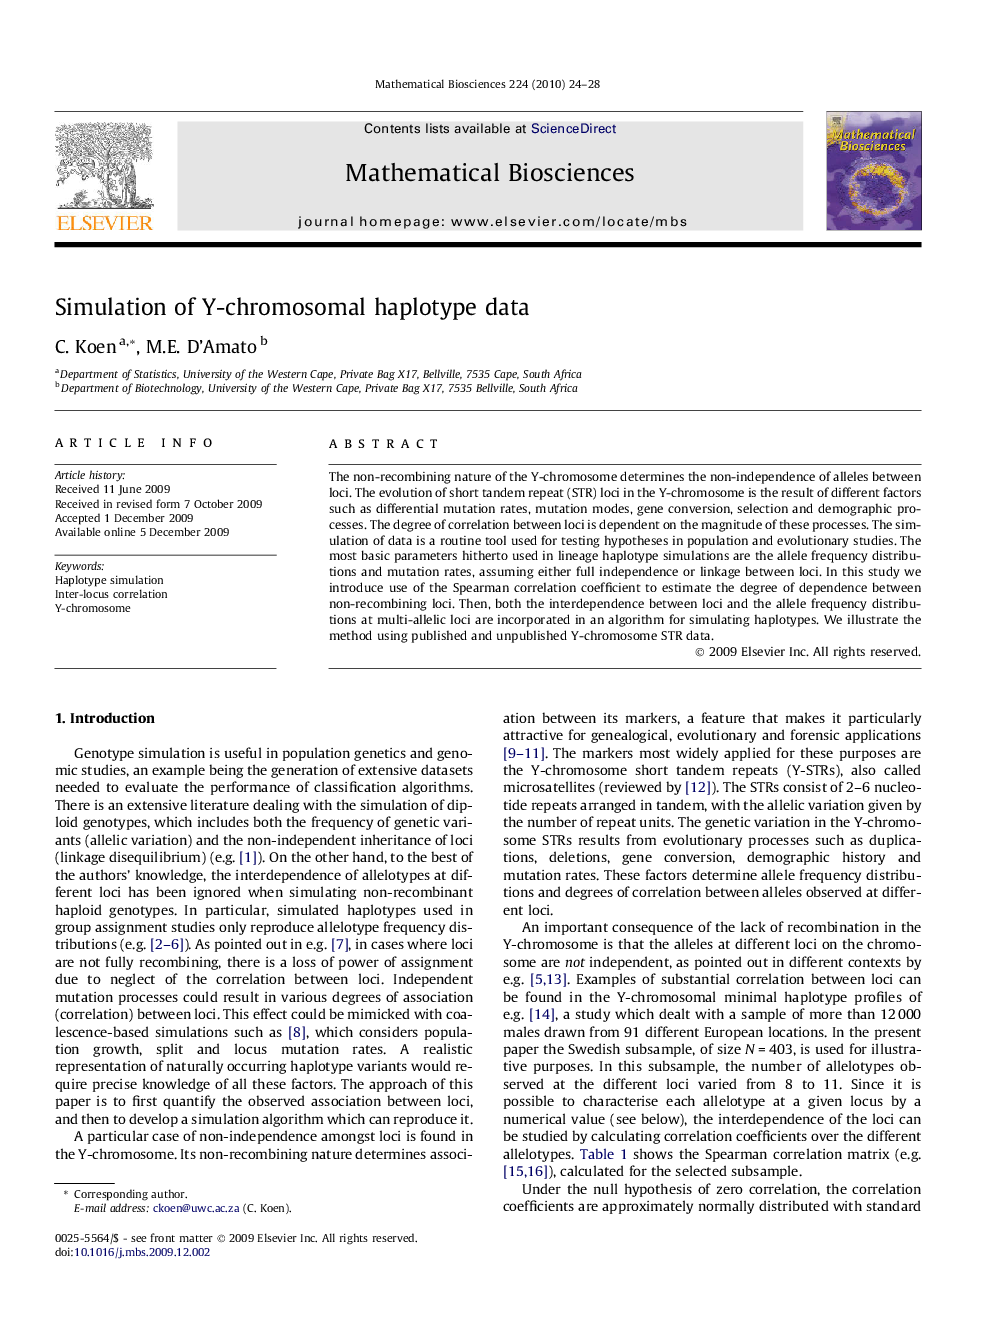 Simulation of Y-chromosomal haplotype data